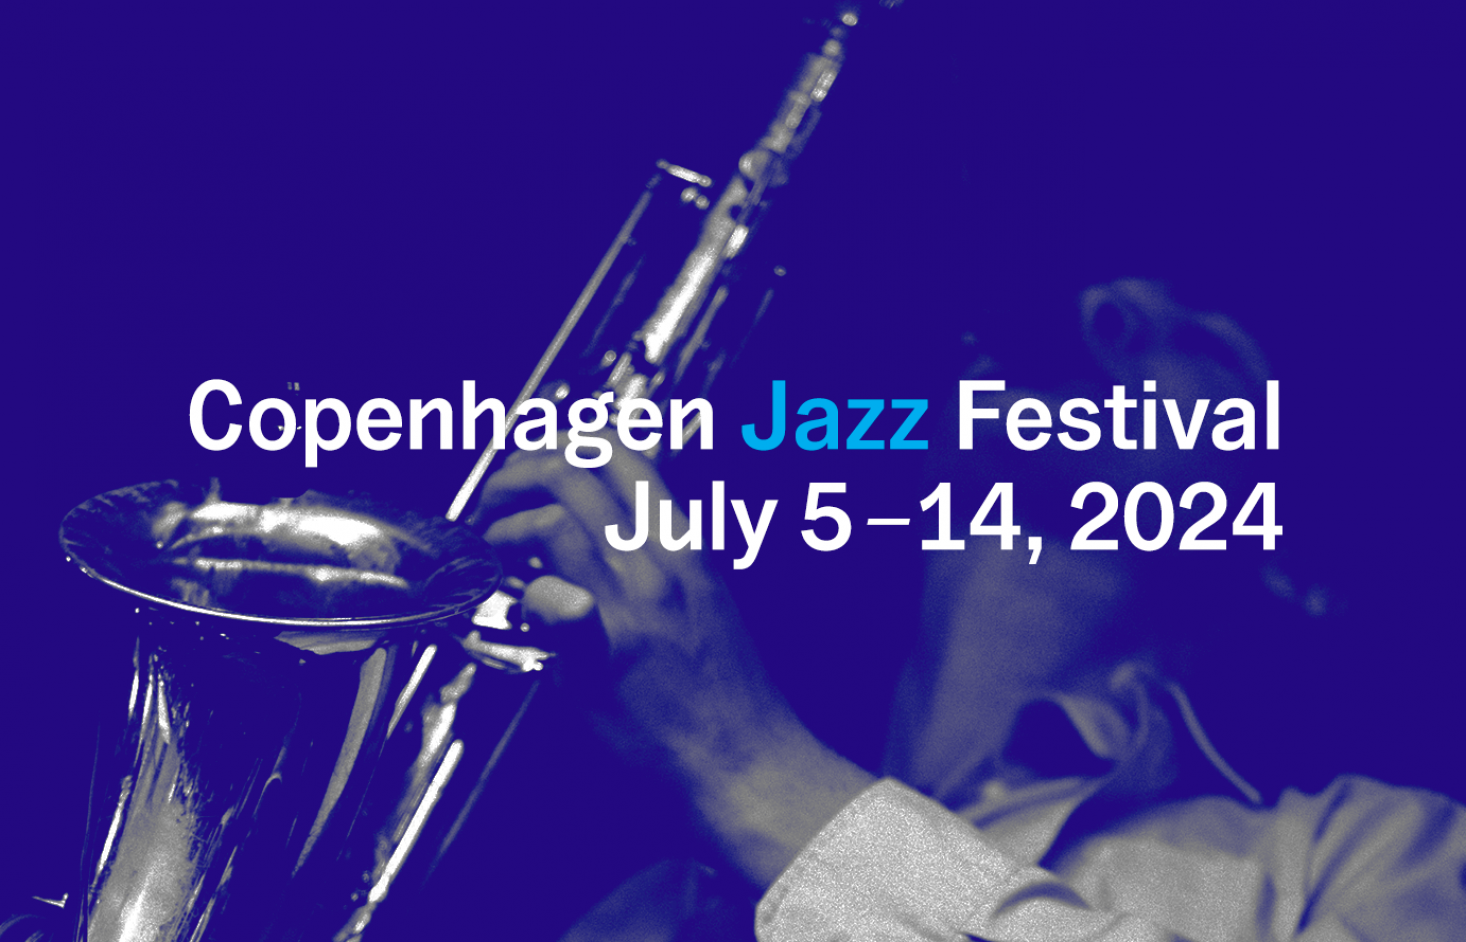 Se datoerne for Copenhagen Jazz Festival 2024